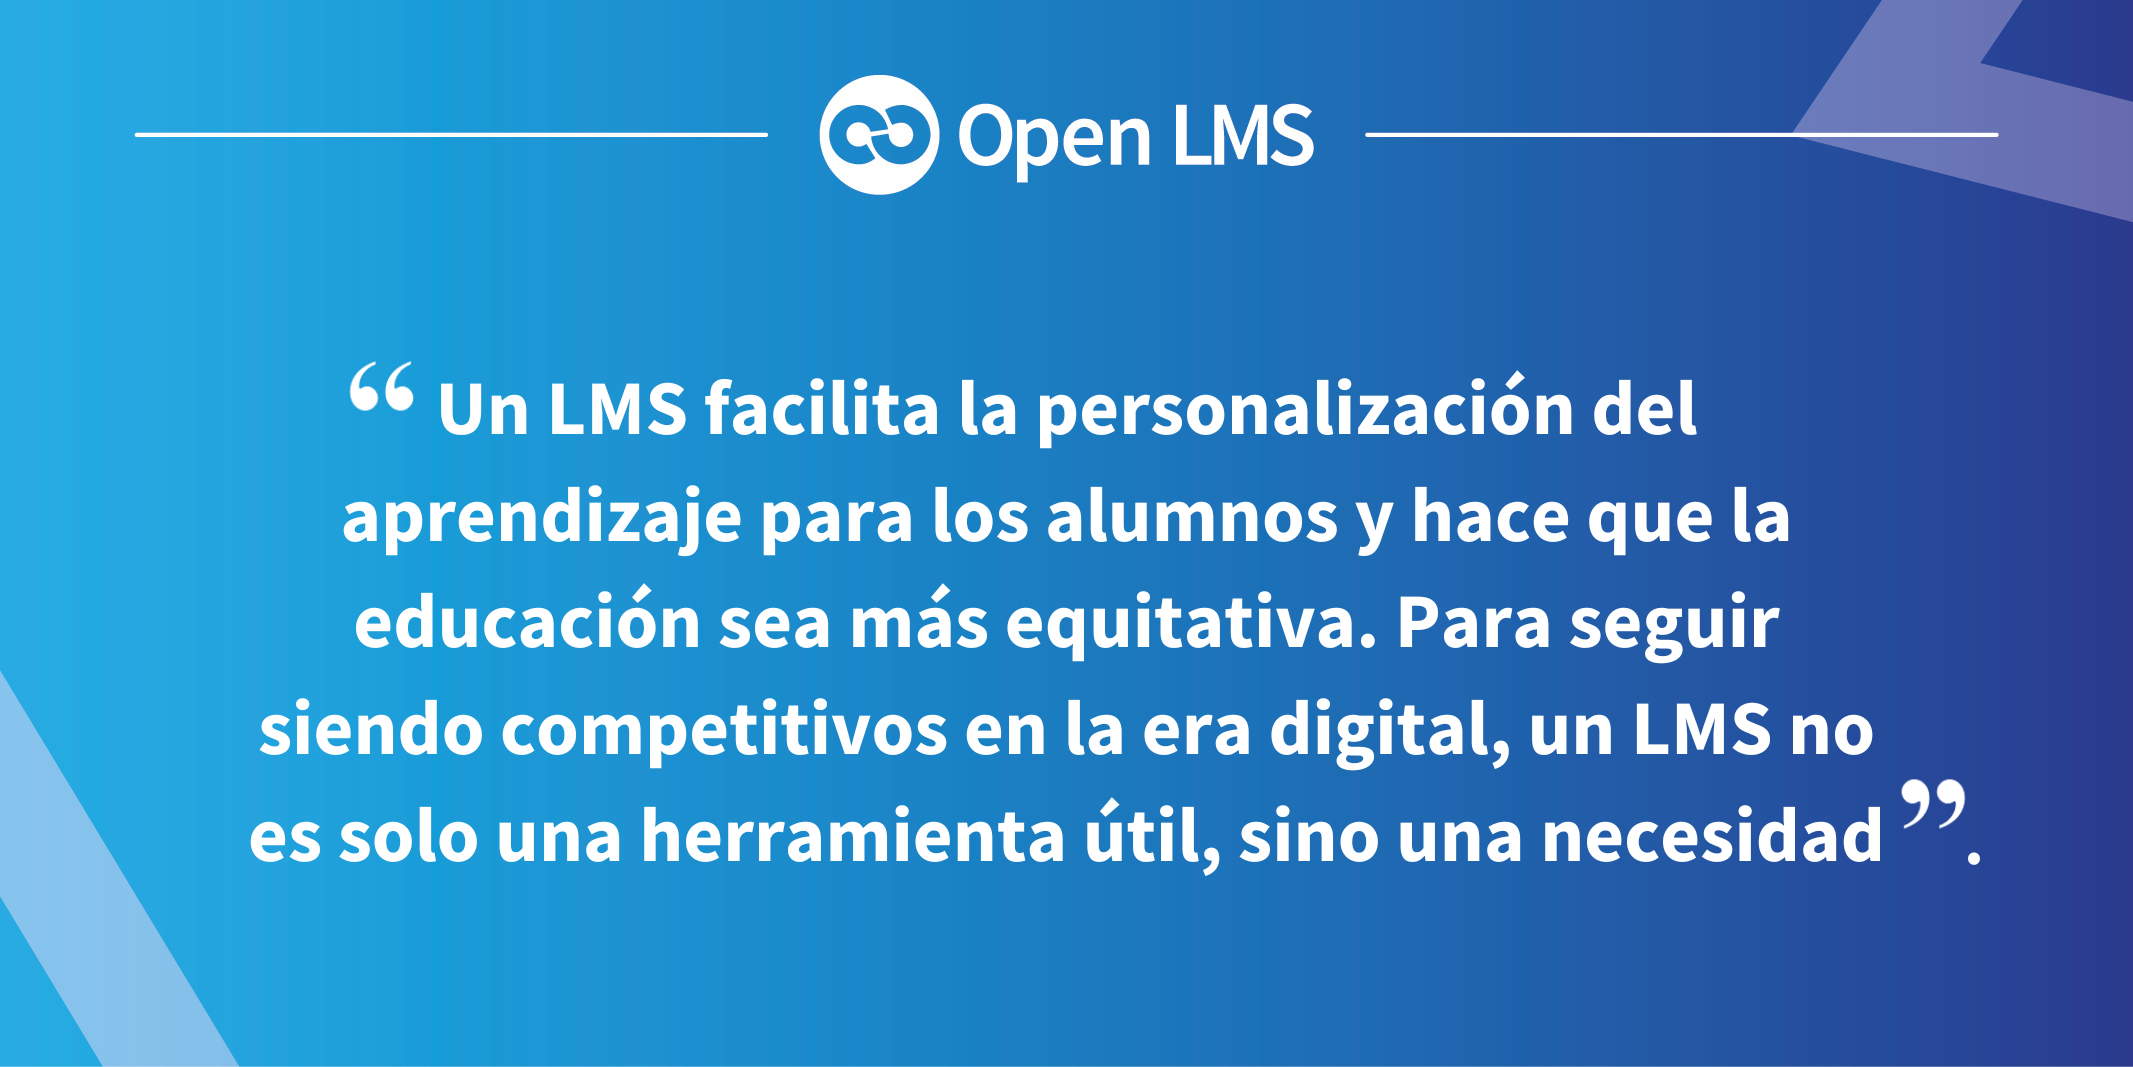 Un LMS facilita la personalización del aprendizaje para los alumnos y hace que la educación sea más equitativa. Para seguir siendo competitivos en la era digital, un LMS no es solo una herramienta útil, sino una necesidad